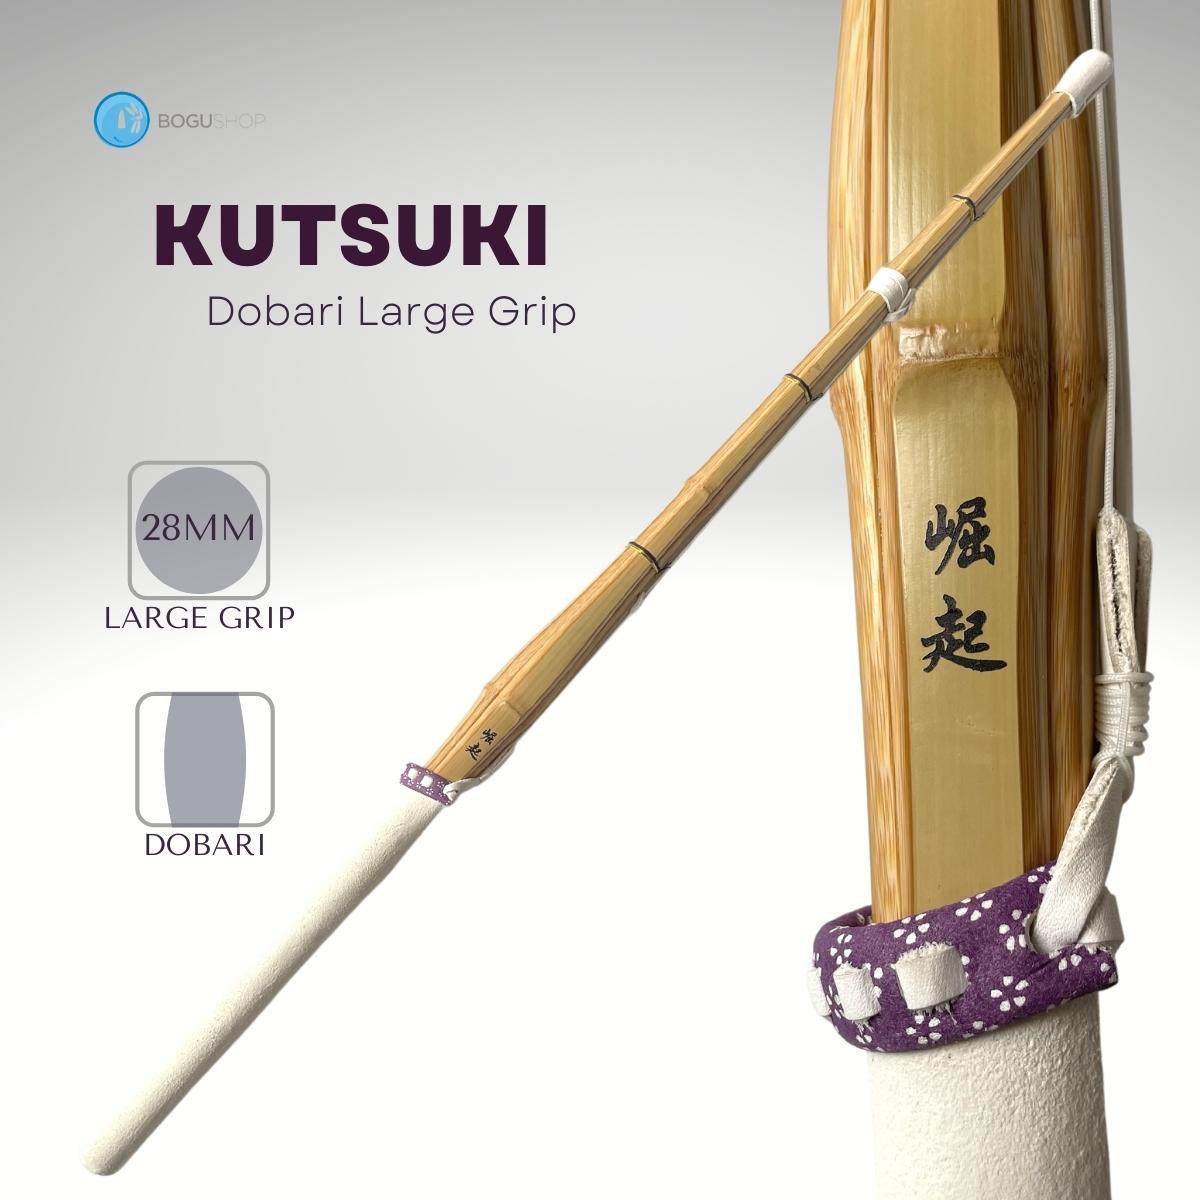 [Keichiku Bamboo] "Kutsuki" Doubari style large grip Shinai